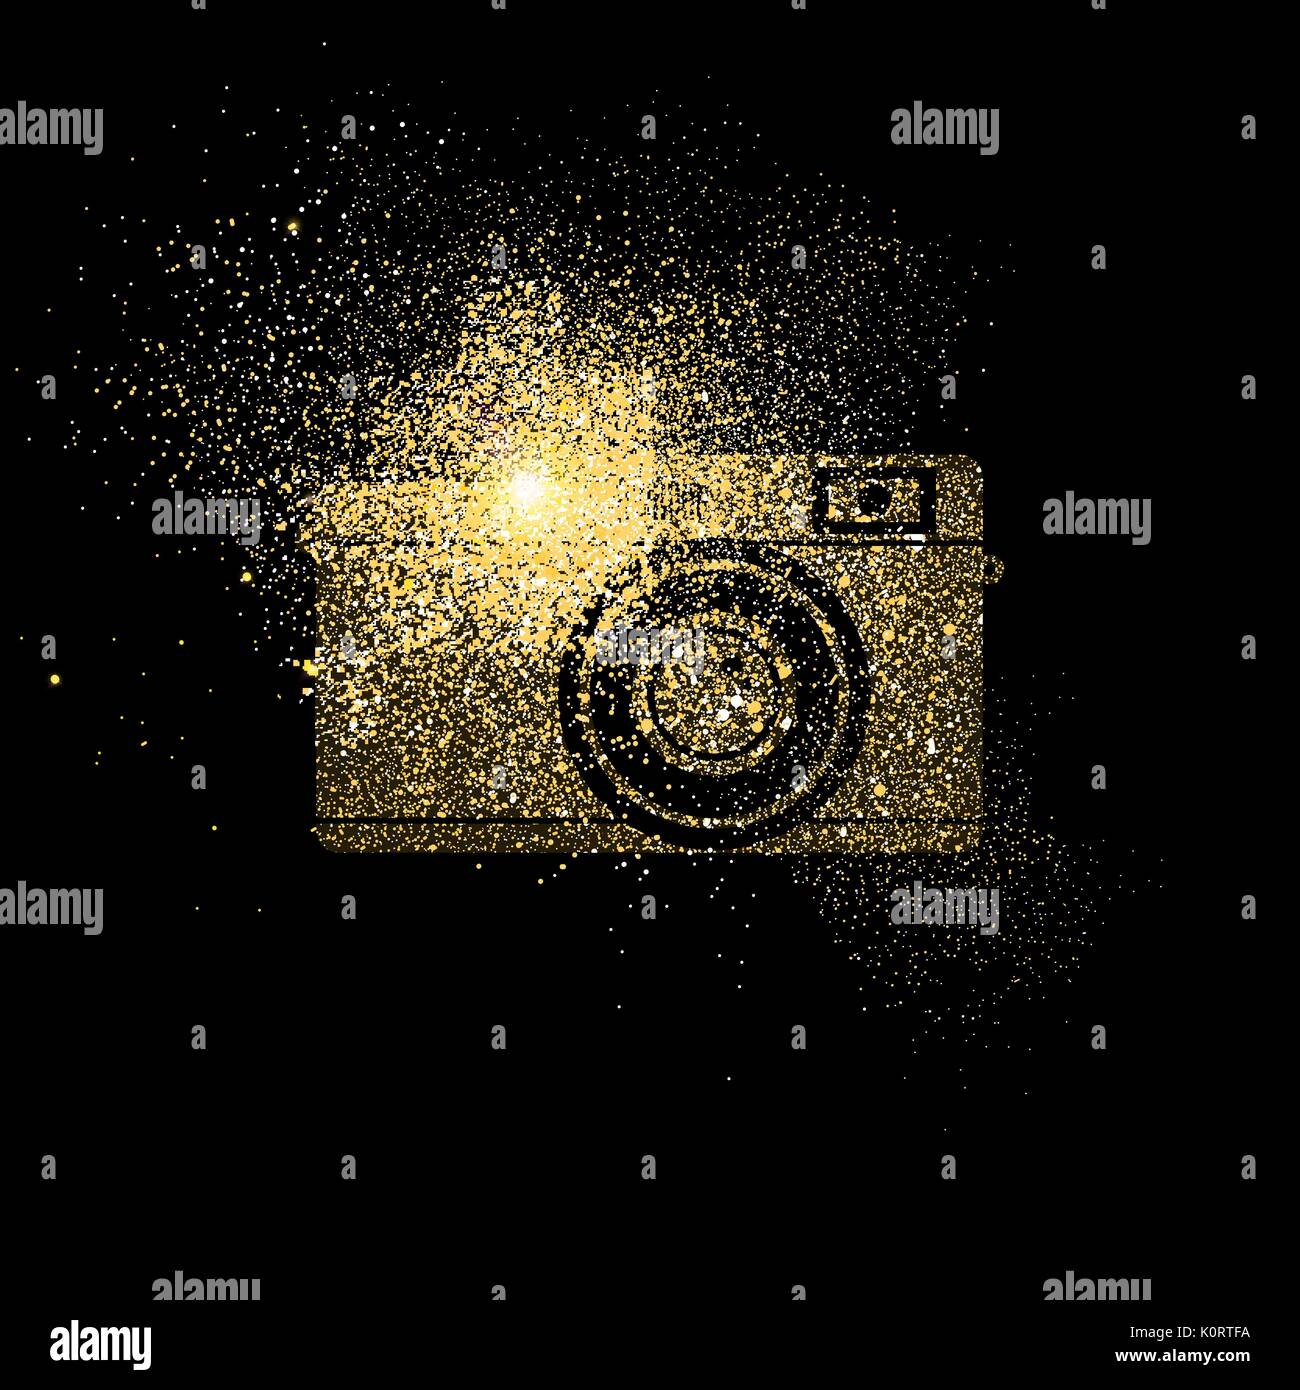 Vintage Kamera symbol Konzeption Illustration, gold Fotografie Symbol aus realistischen Golden glitter Staub auf schwarzen Hintergrund. EPS 10 Vektor. Stock Vektor